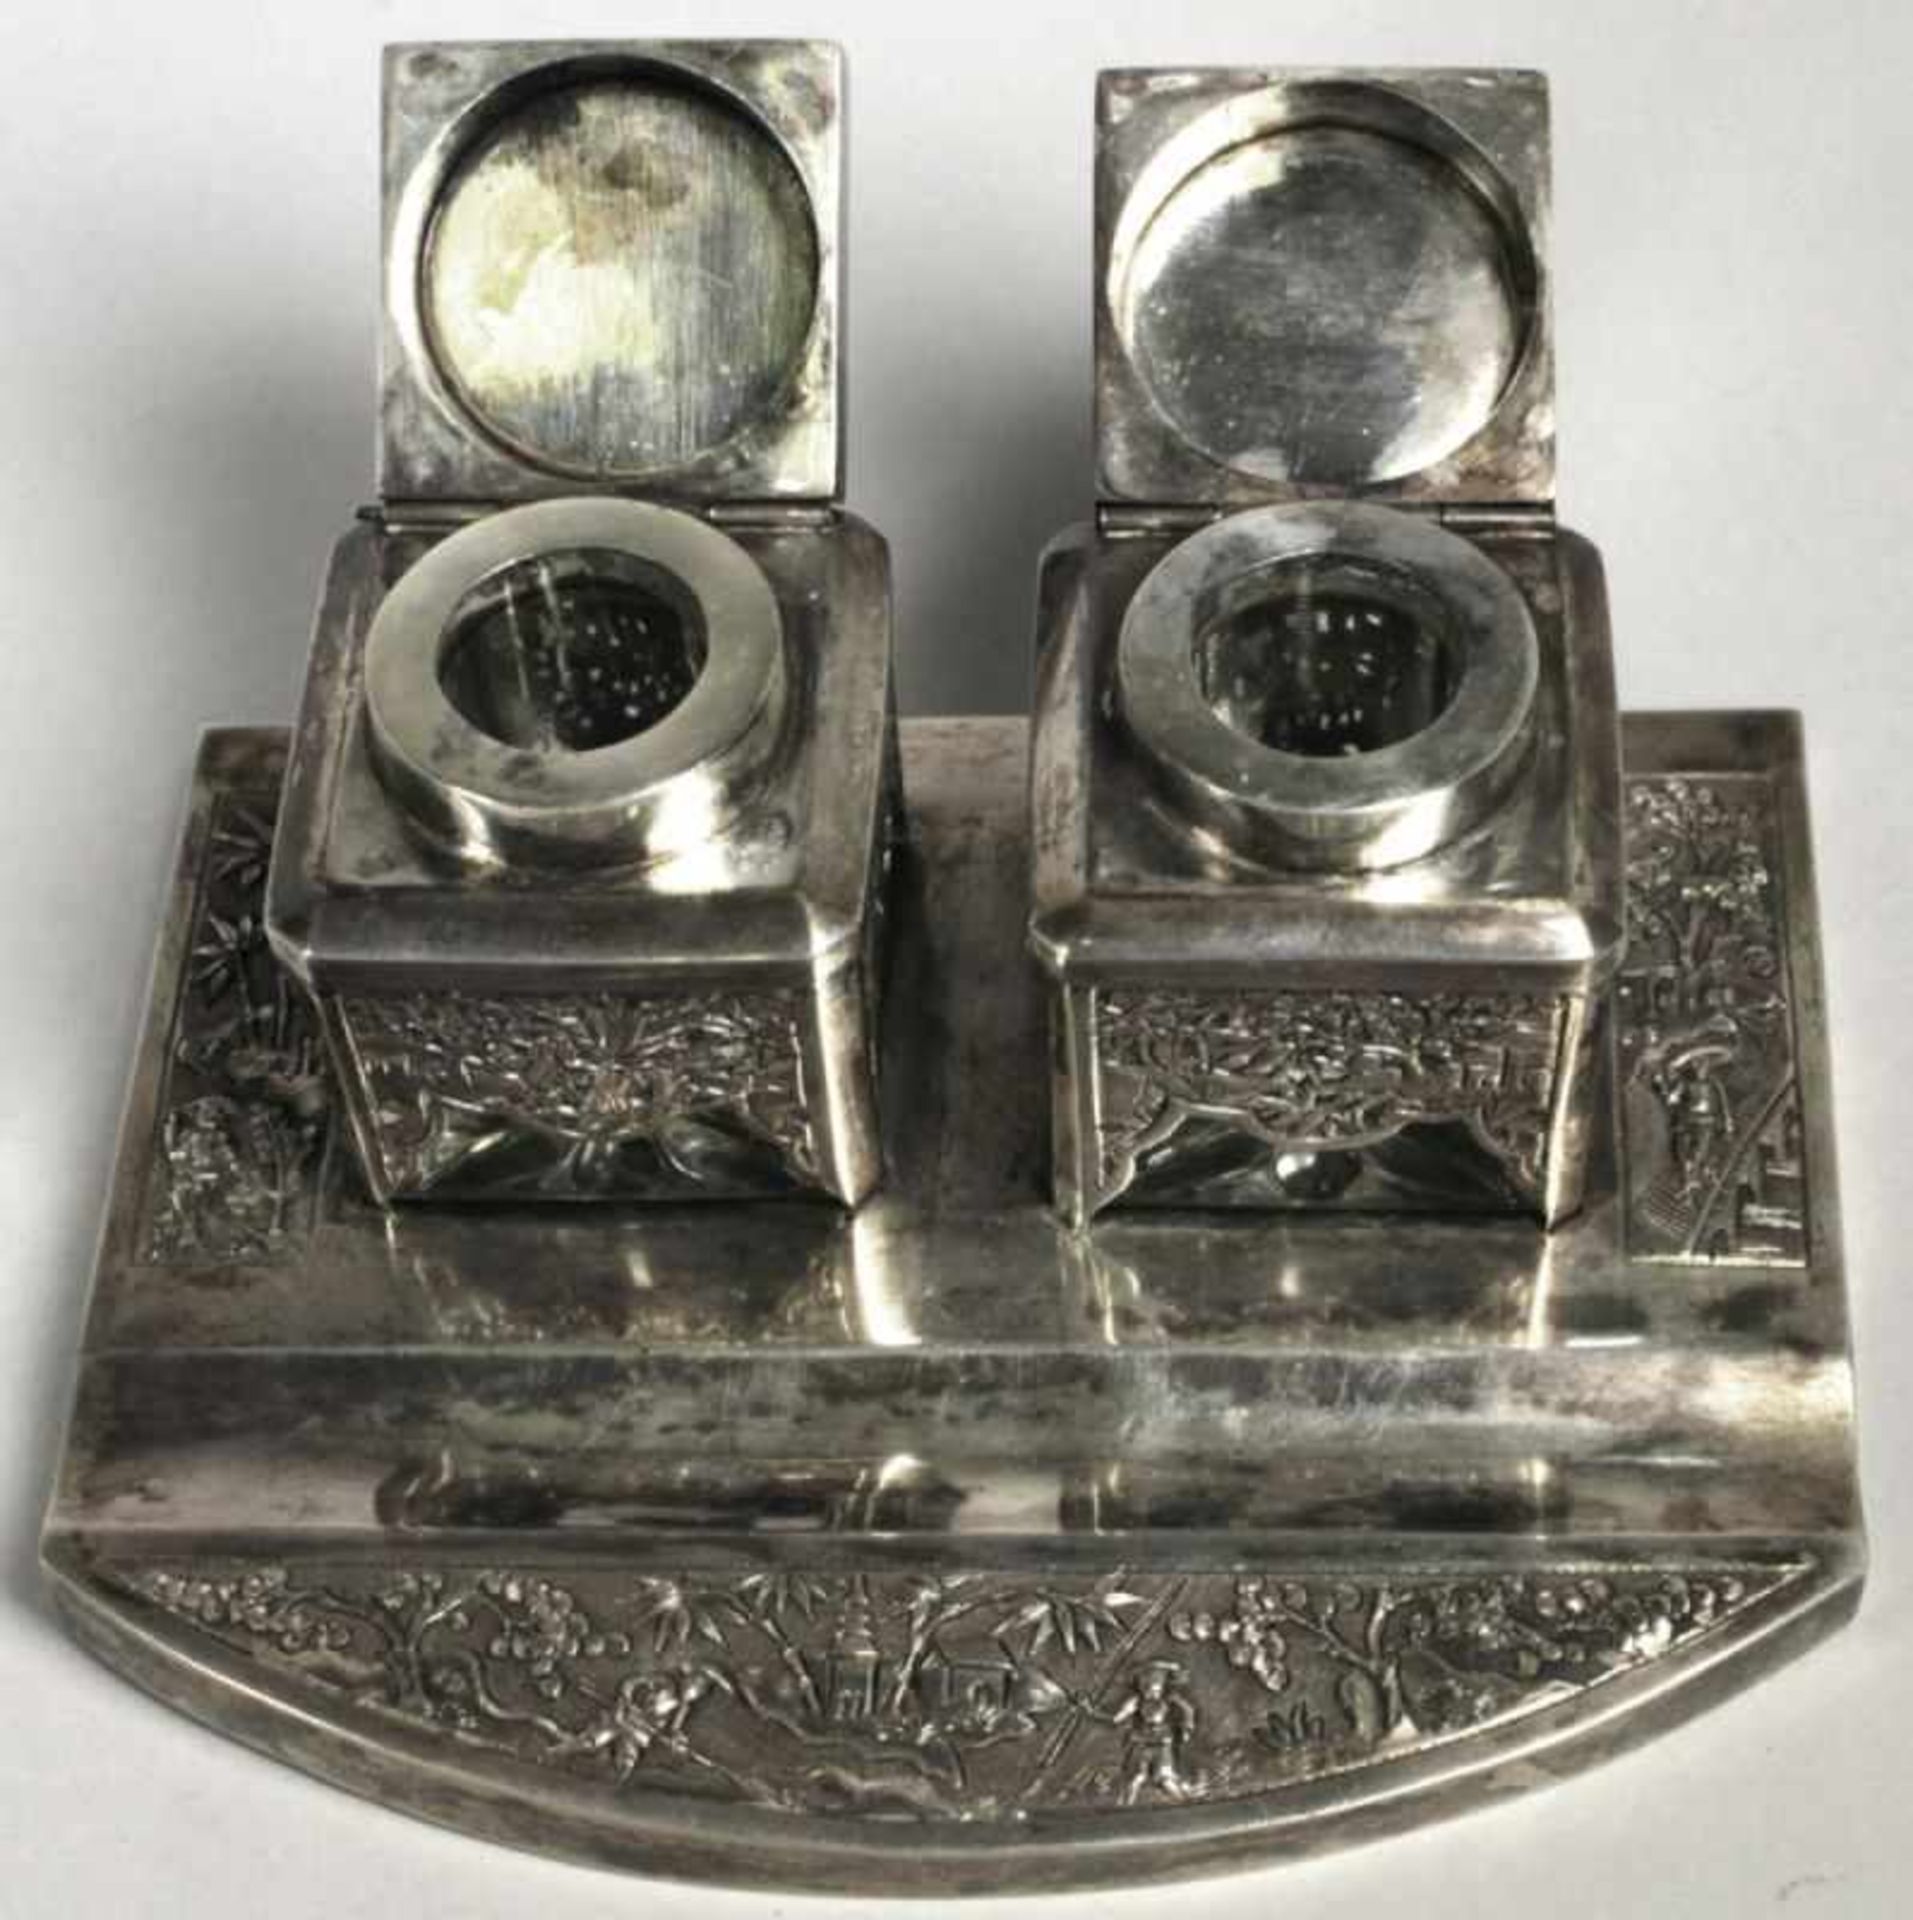 Tintenzeug, Vietnam, Mitte 20. Jh., Silber 900, Federablage, 2 scharnierte Tintenfässermit farblosen - Bild 2 aus 5